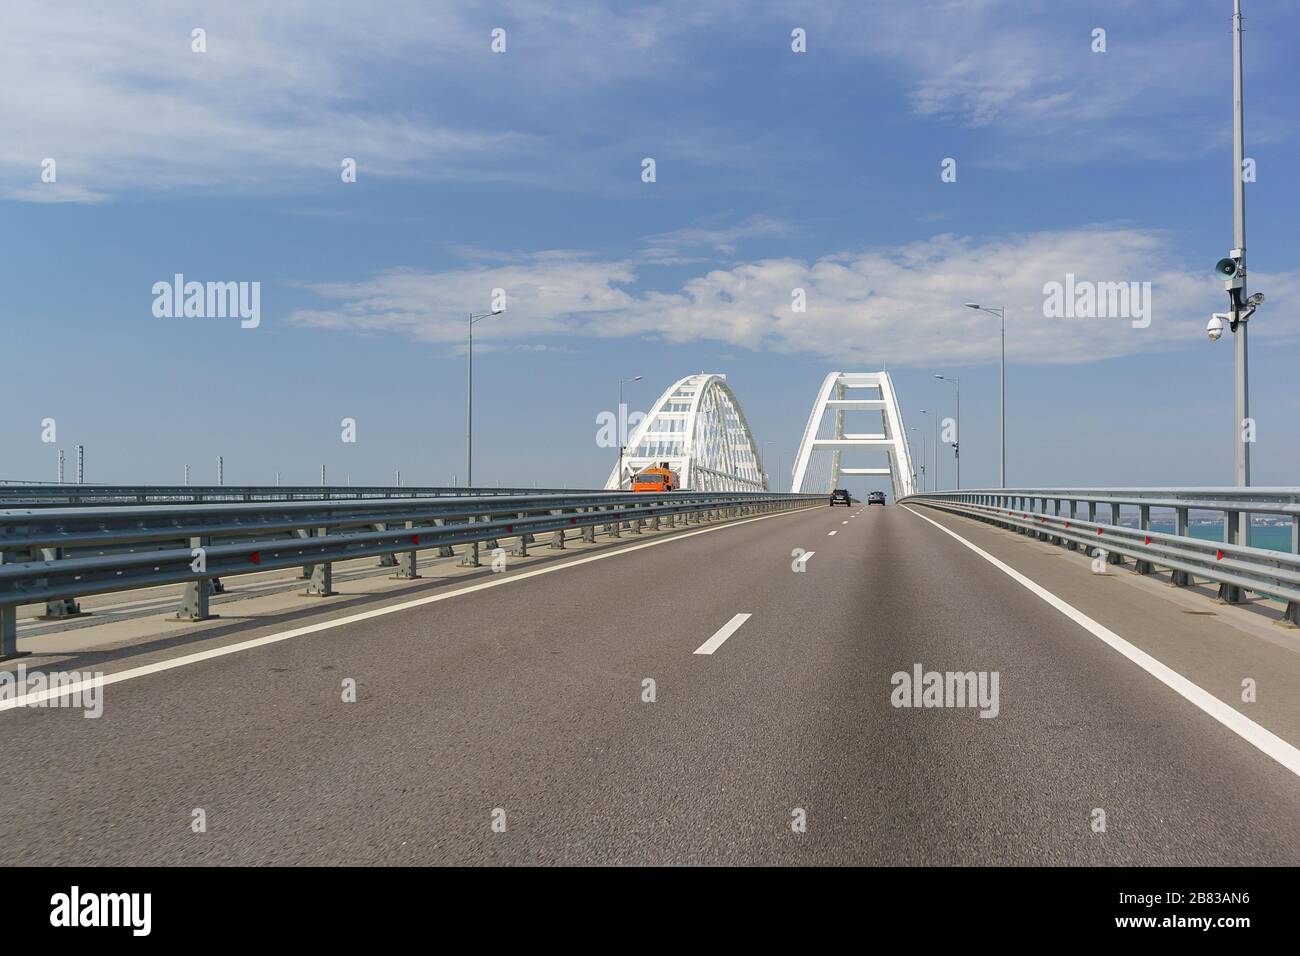 Pont de Crimée traversant le détroit de Kerch. Les voitures entrent dans la plage en courbe. Journée d'été ensoleillée Banque D'Images